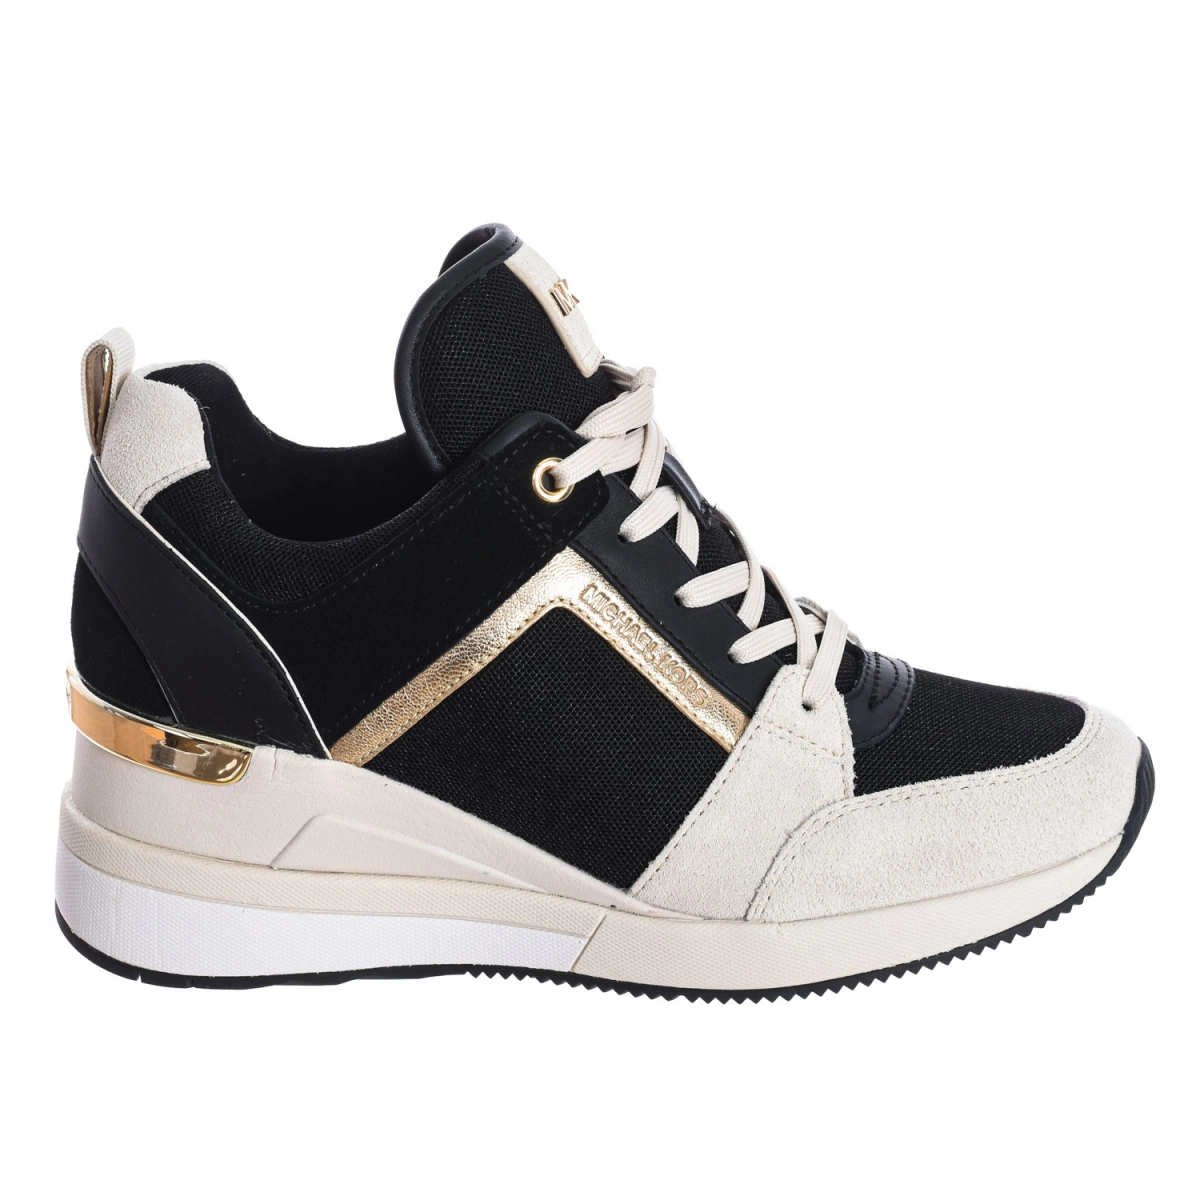 Zapatilla Sneaker Georgie tricolor Michael Kors R9GEFS1S mujer Talla: 38.5 Color: Negro R9GEFS1S-LT-CRM-MULTI.38.5